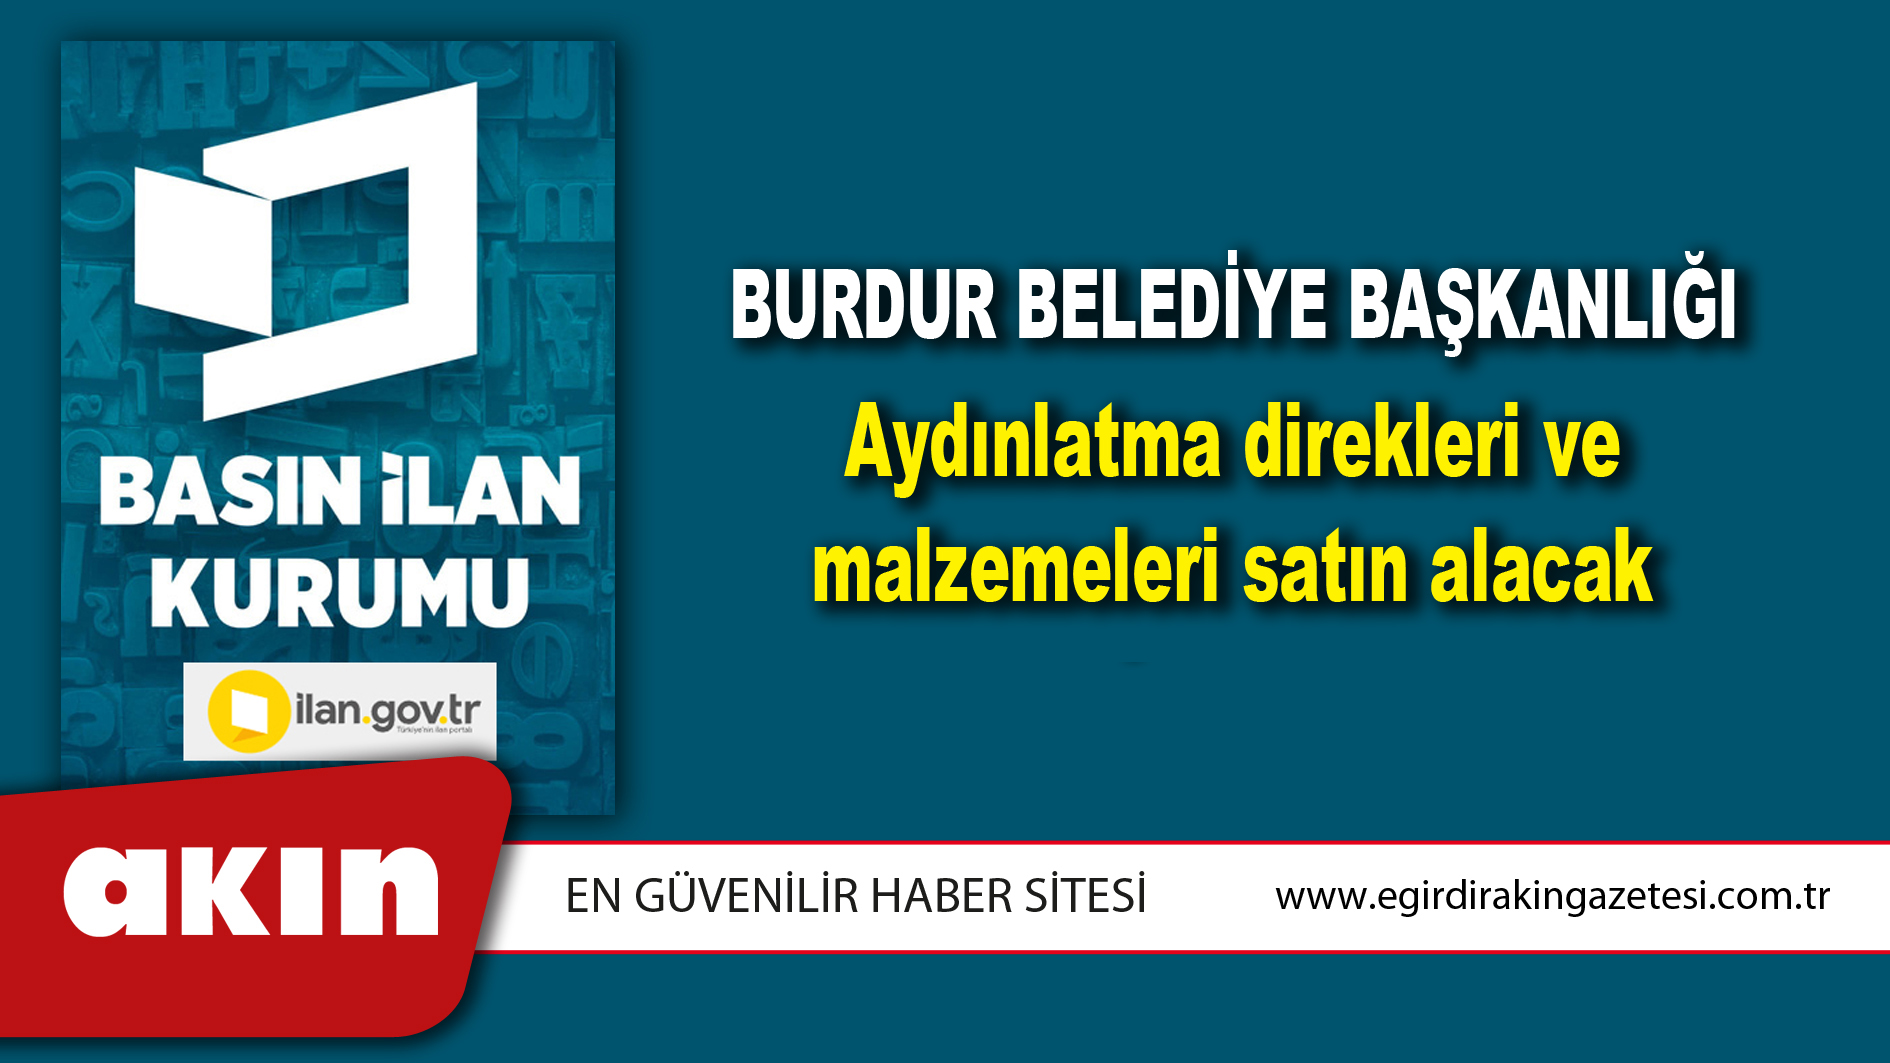 Burdur Belediye Başkanlığı Aydınlatma direkleri ve malzemeleri satın alacak